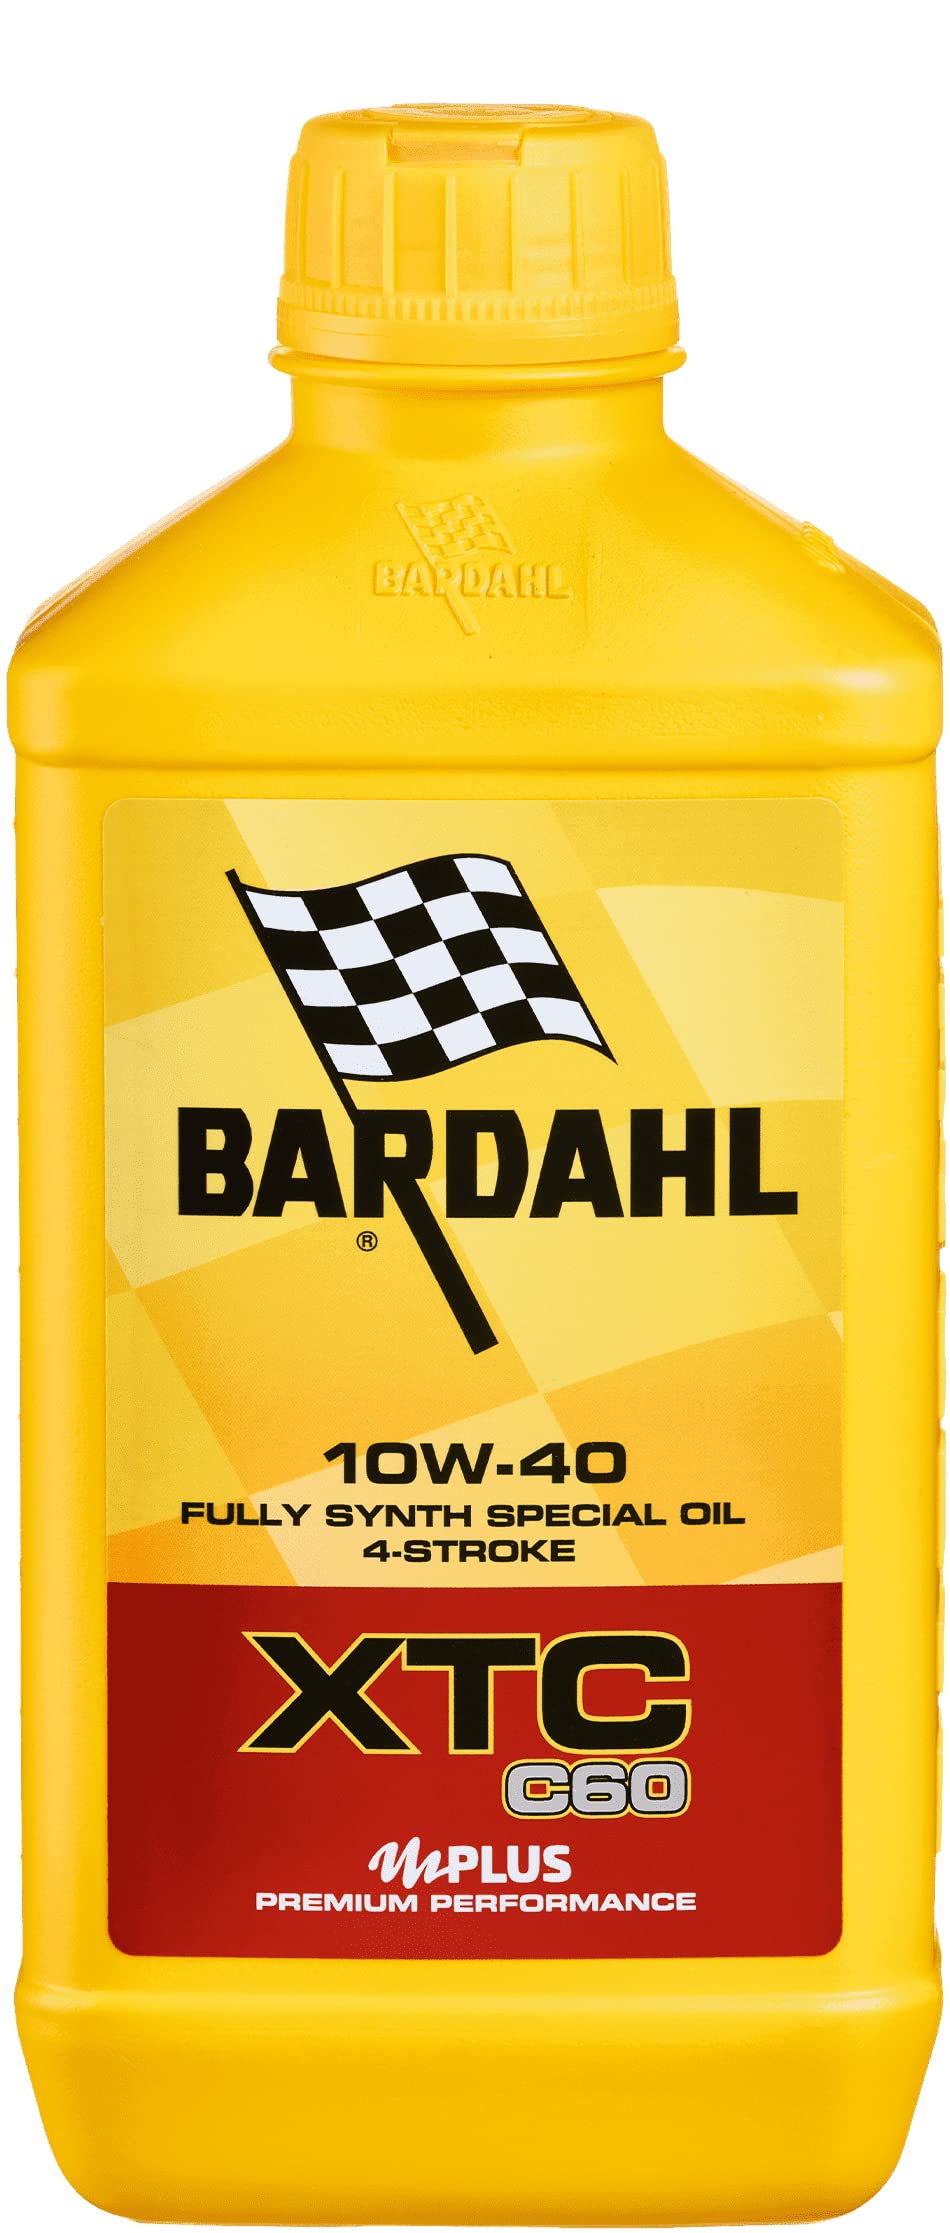 Bardahl - Motoröl XTC C60 10W-40 für 4-Takt-Motorräder, wirkt der Bildung von Ablagerungen entgegen, 100% synthetisch, 3 Liter von Bardahl